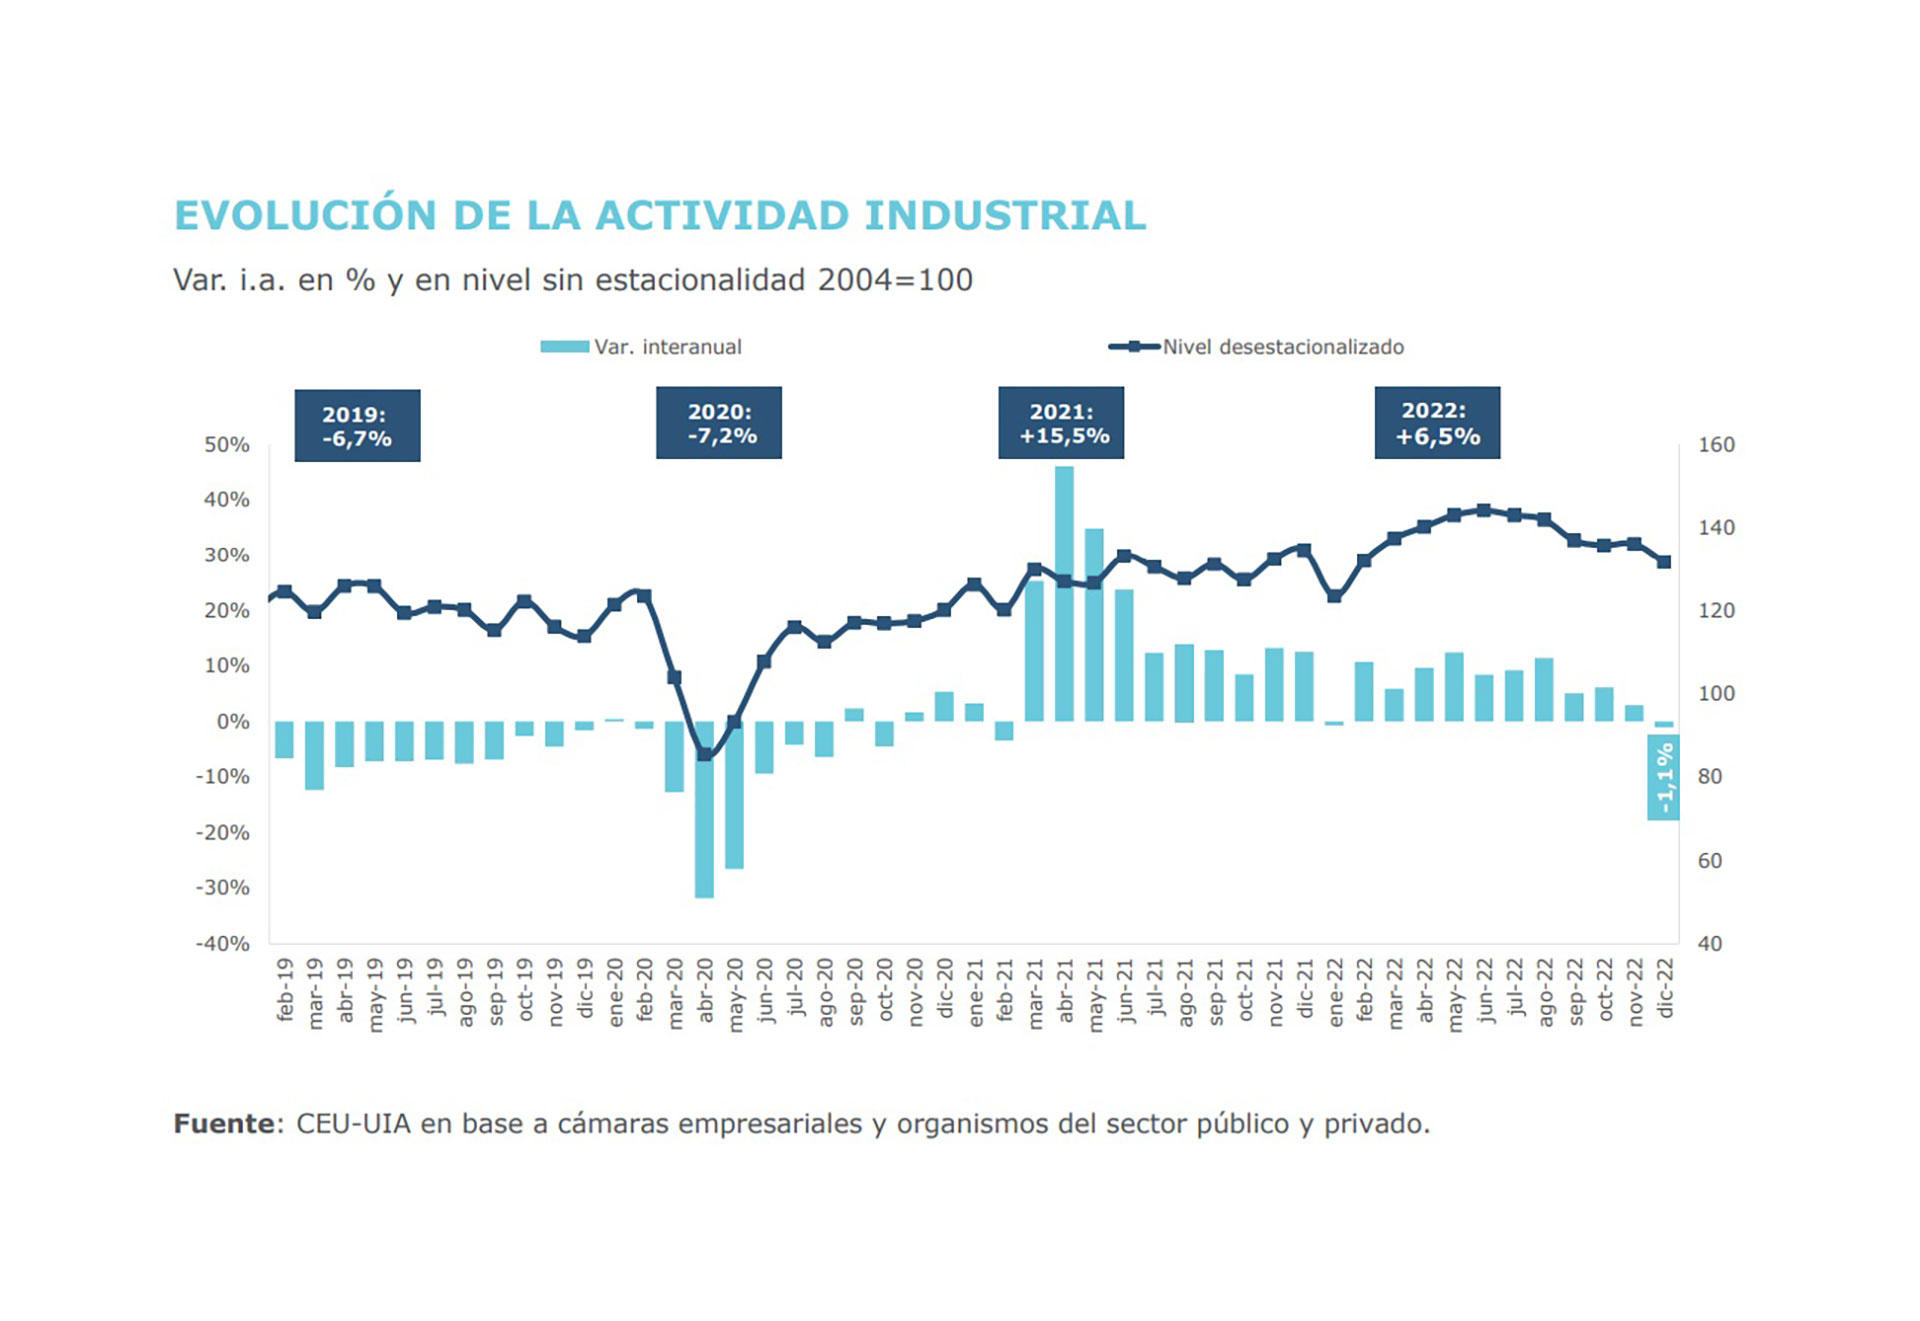 Fuente: Unión Industrial Argentina